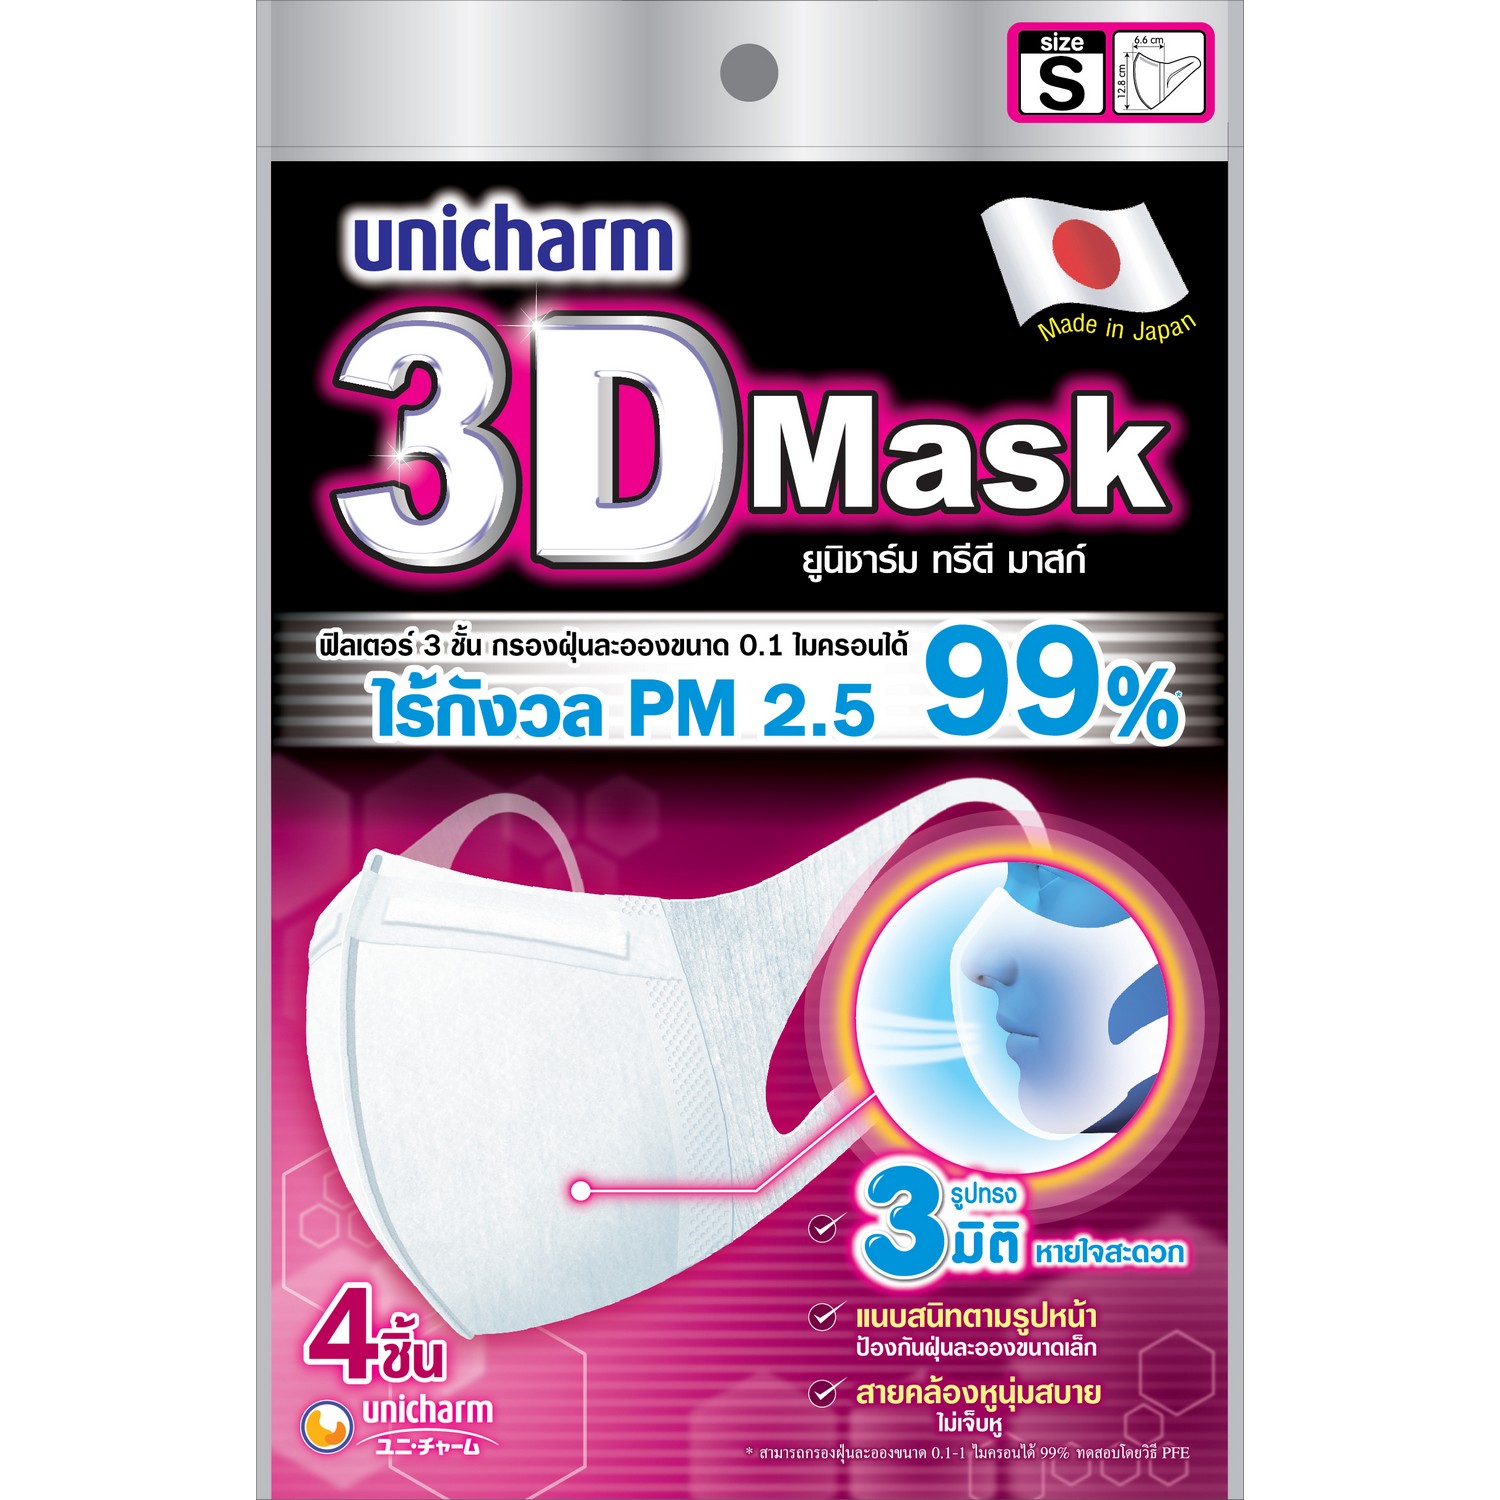 3D Mask ทรีดี มาส์ก หน้ากากอนามัยสำหรับผู้ใหญ่ ขนาด S จำนวน 4 ชิ้น